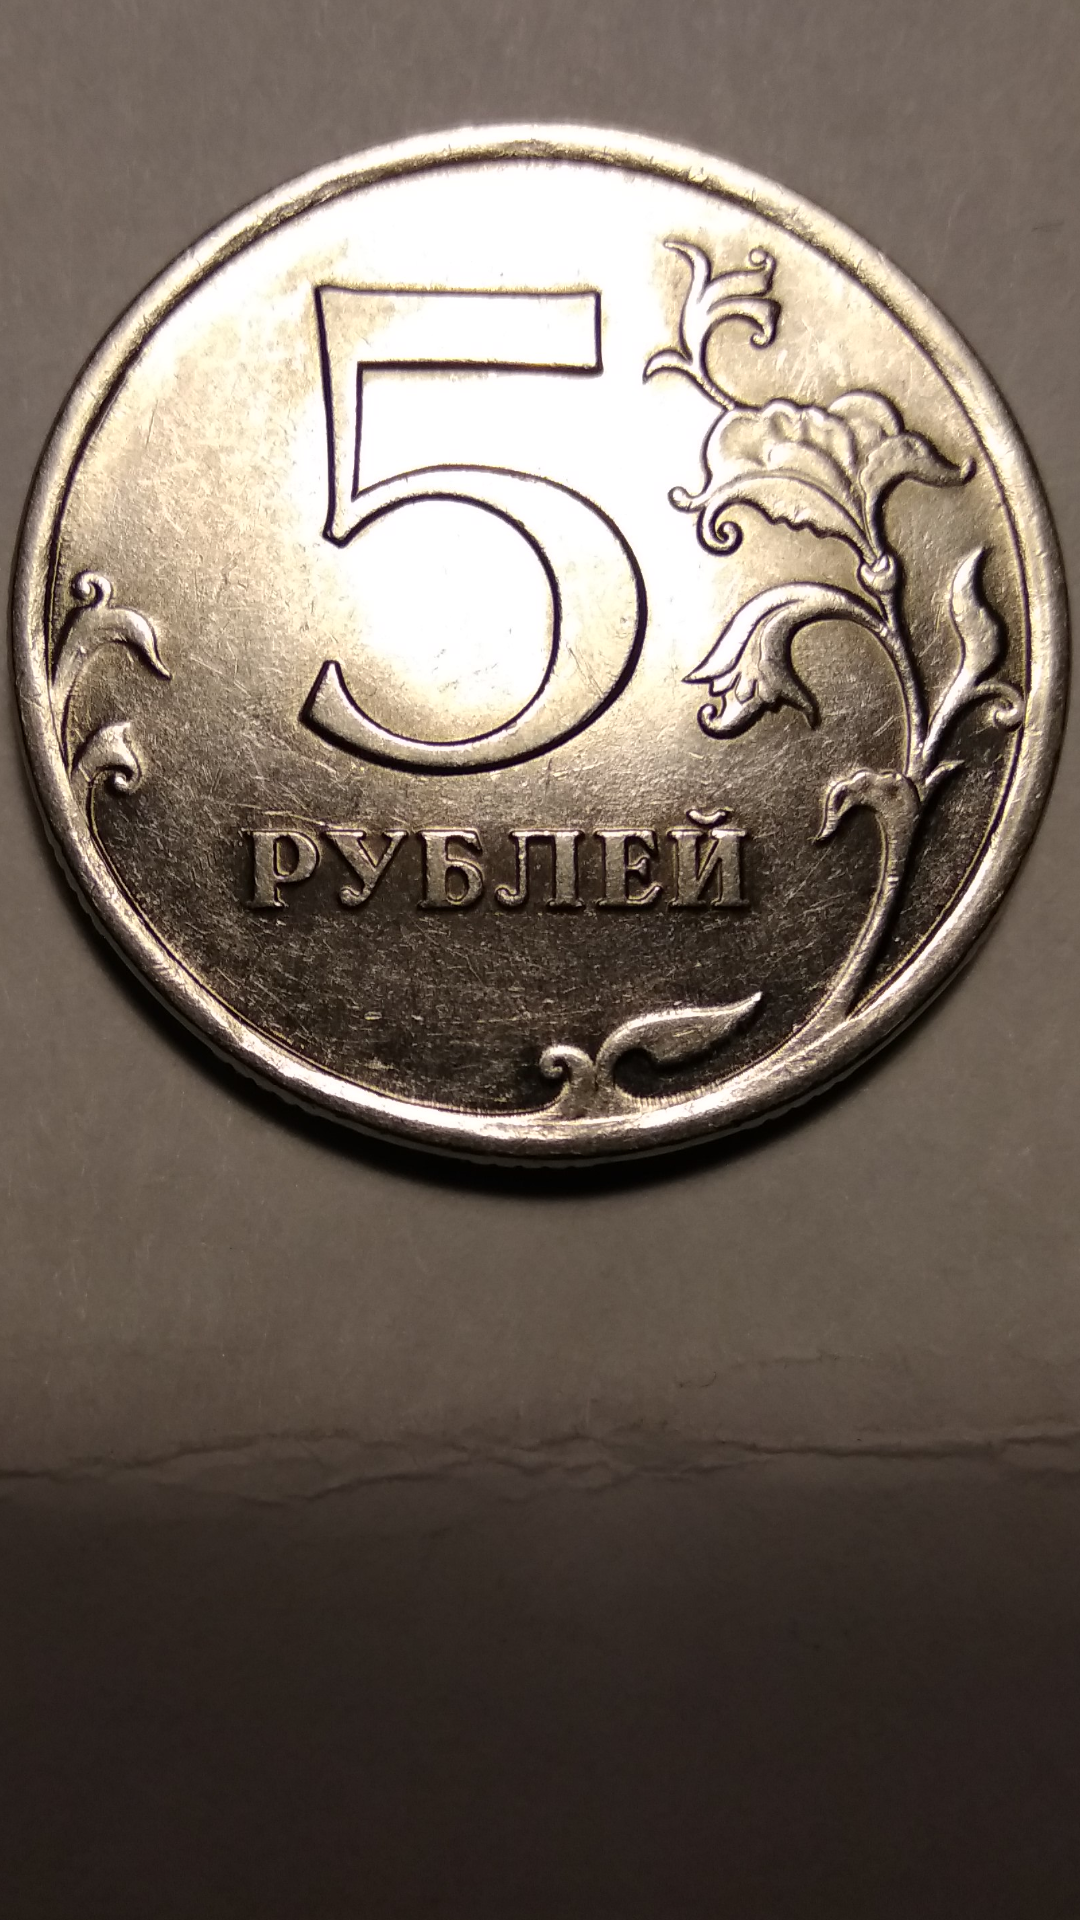 Истории 5 рублей